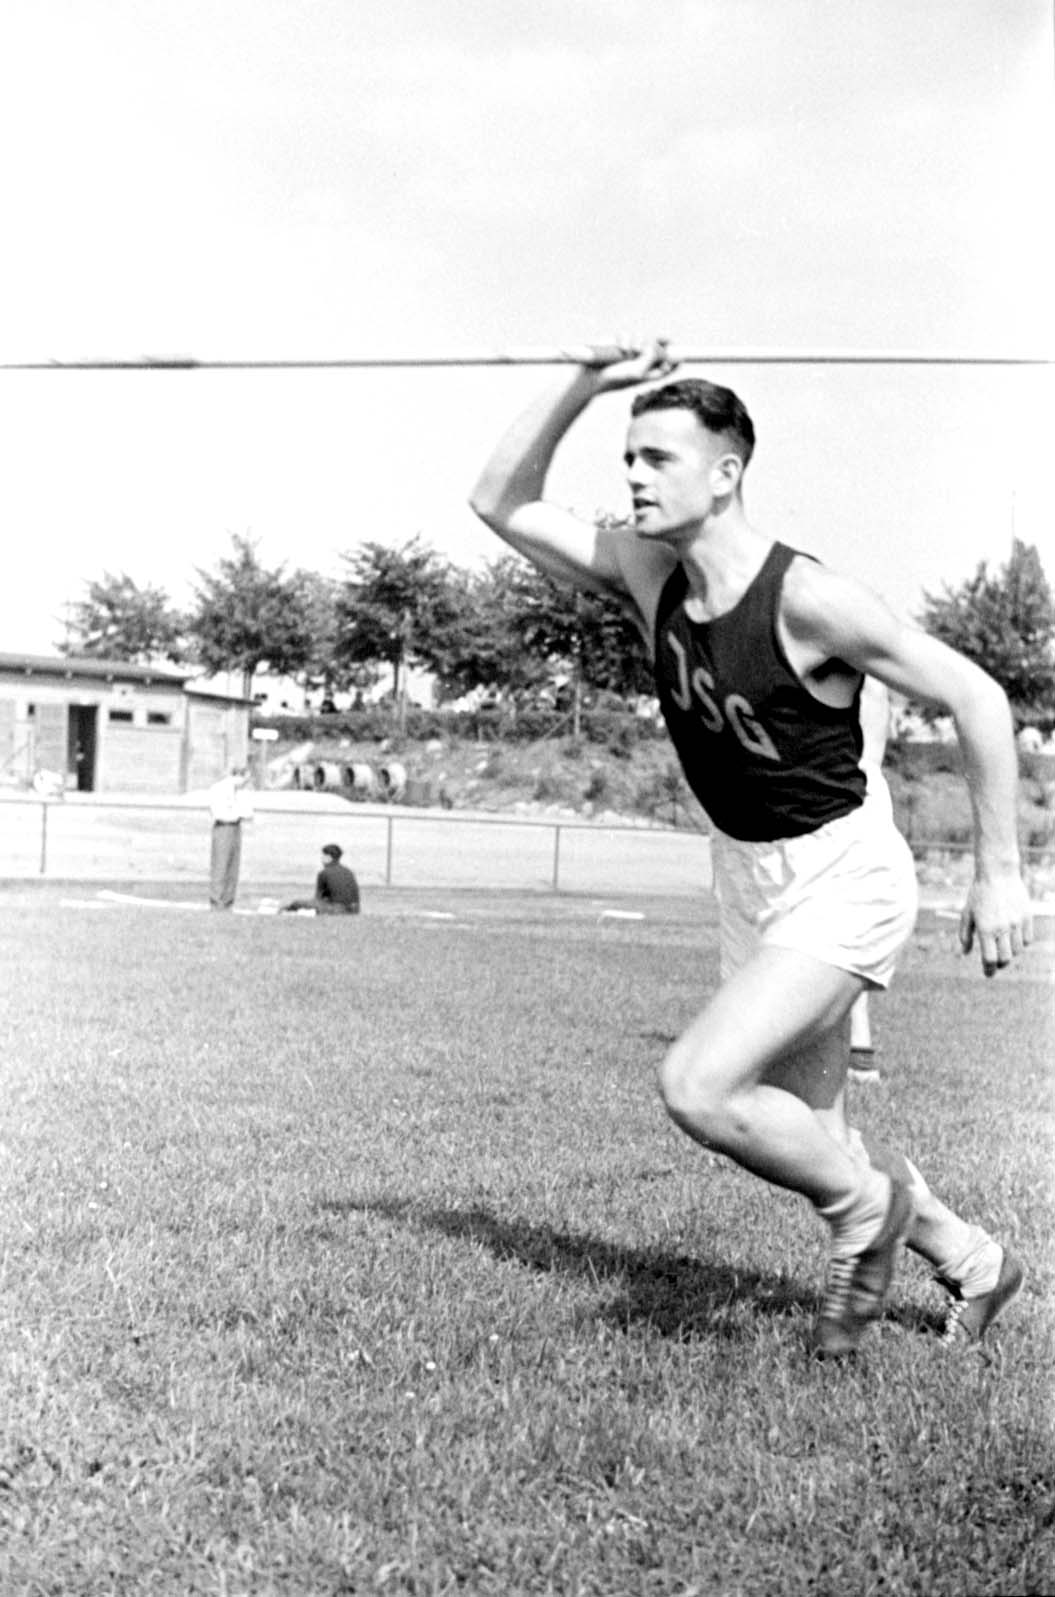 Berlín, Alemania, 4.7.1937. Klaus Pfoertner, vencedor de la competición de lanzamiento de jabalina en un torneo deportivo judío